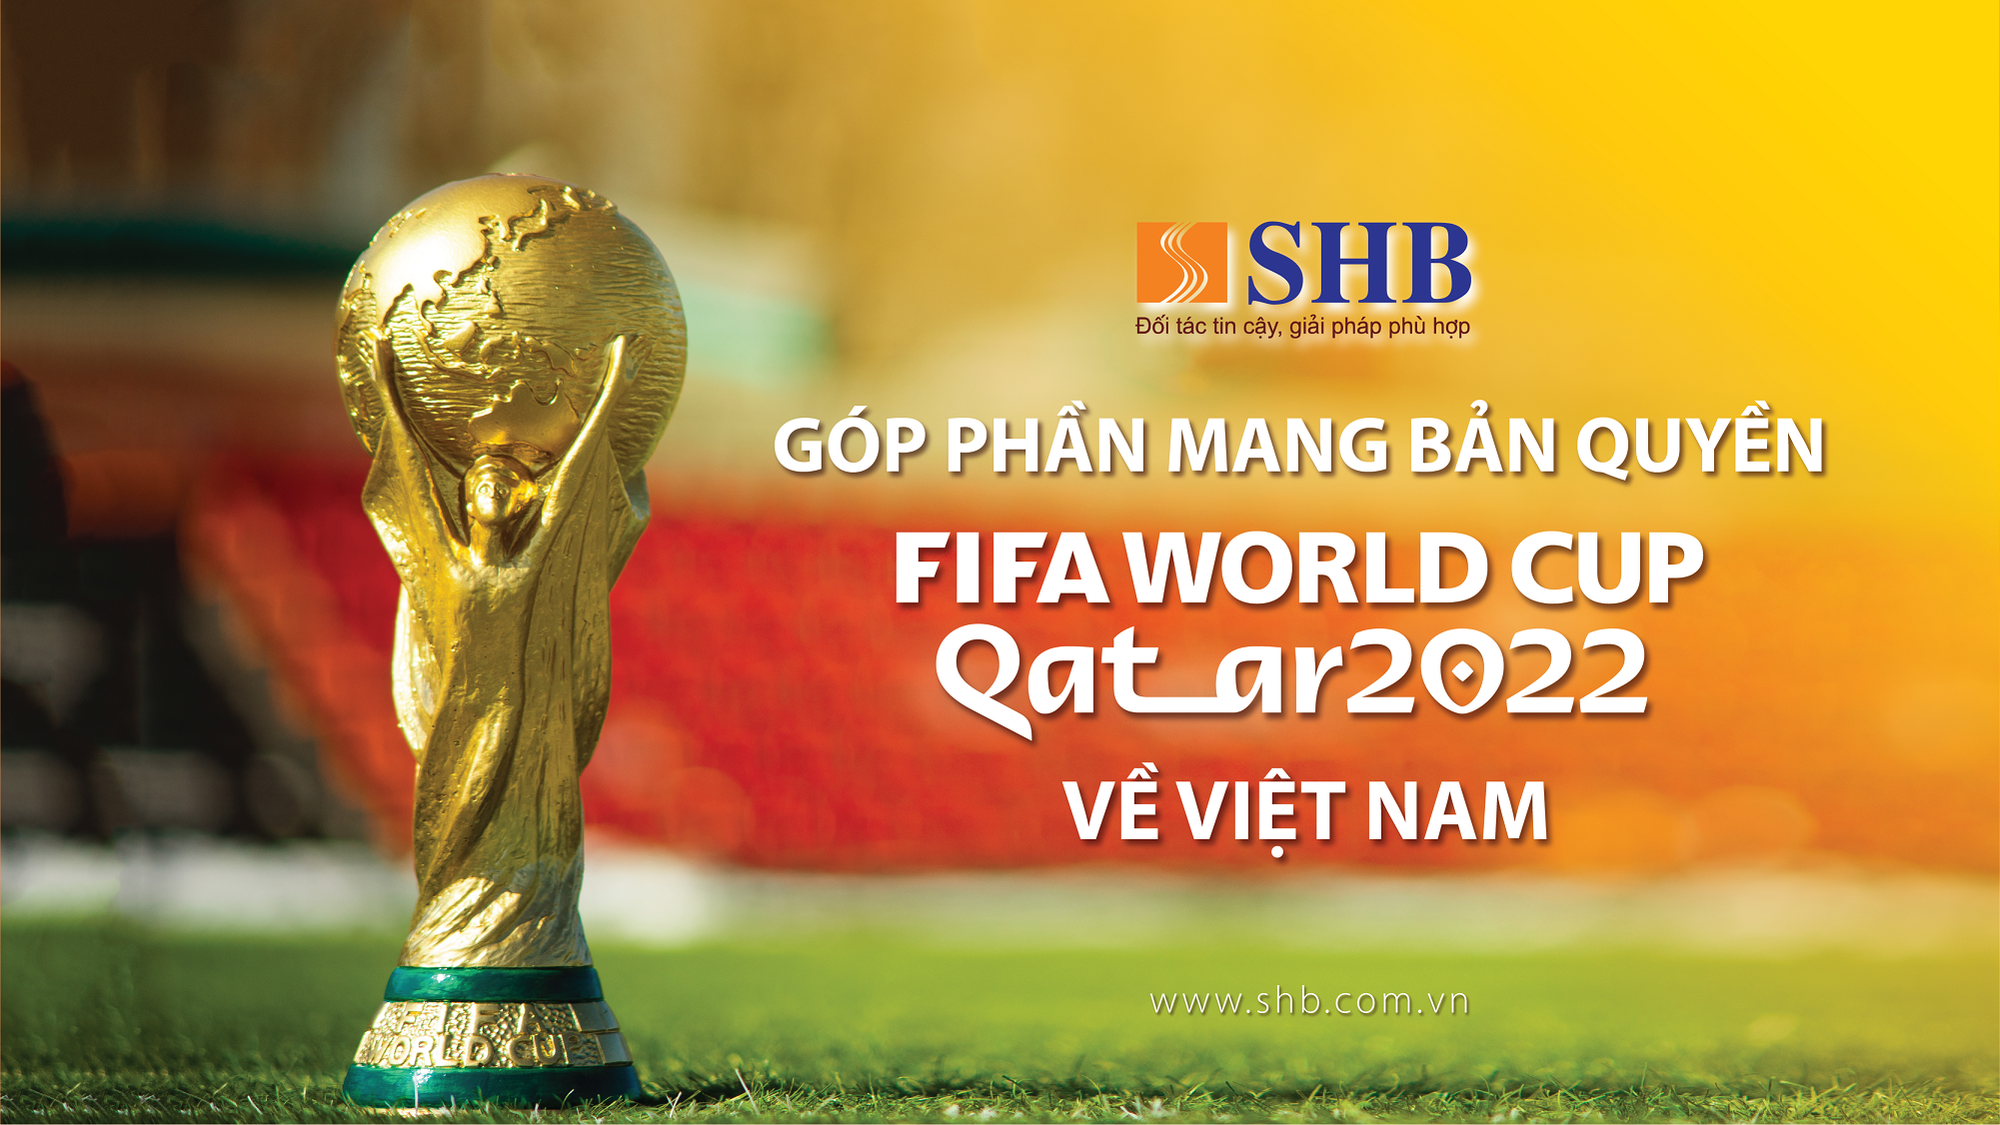 SHB đồng hành cùng VTV sở hữu bản quyền phát sóng FIFA World Cup 2022 - Ảnh 1.